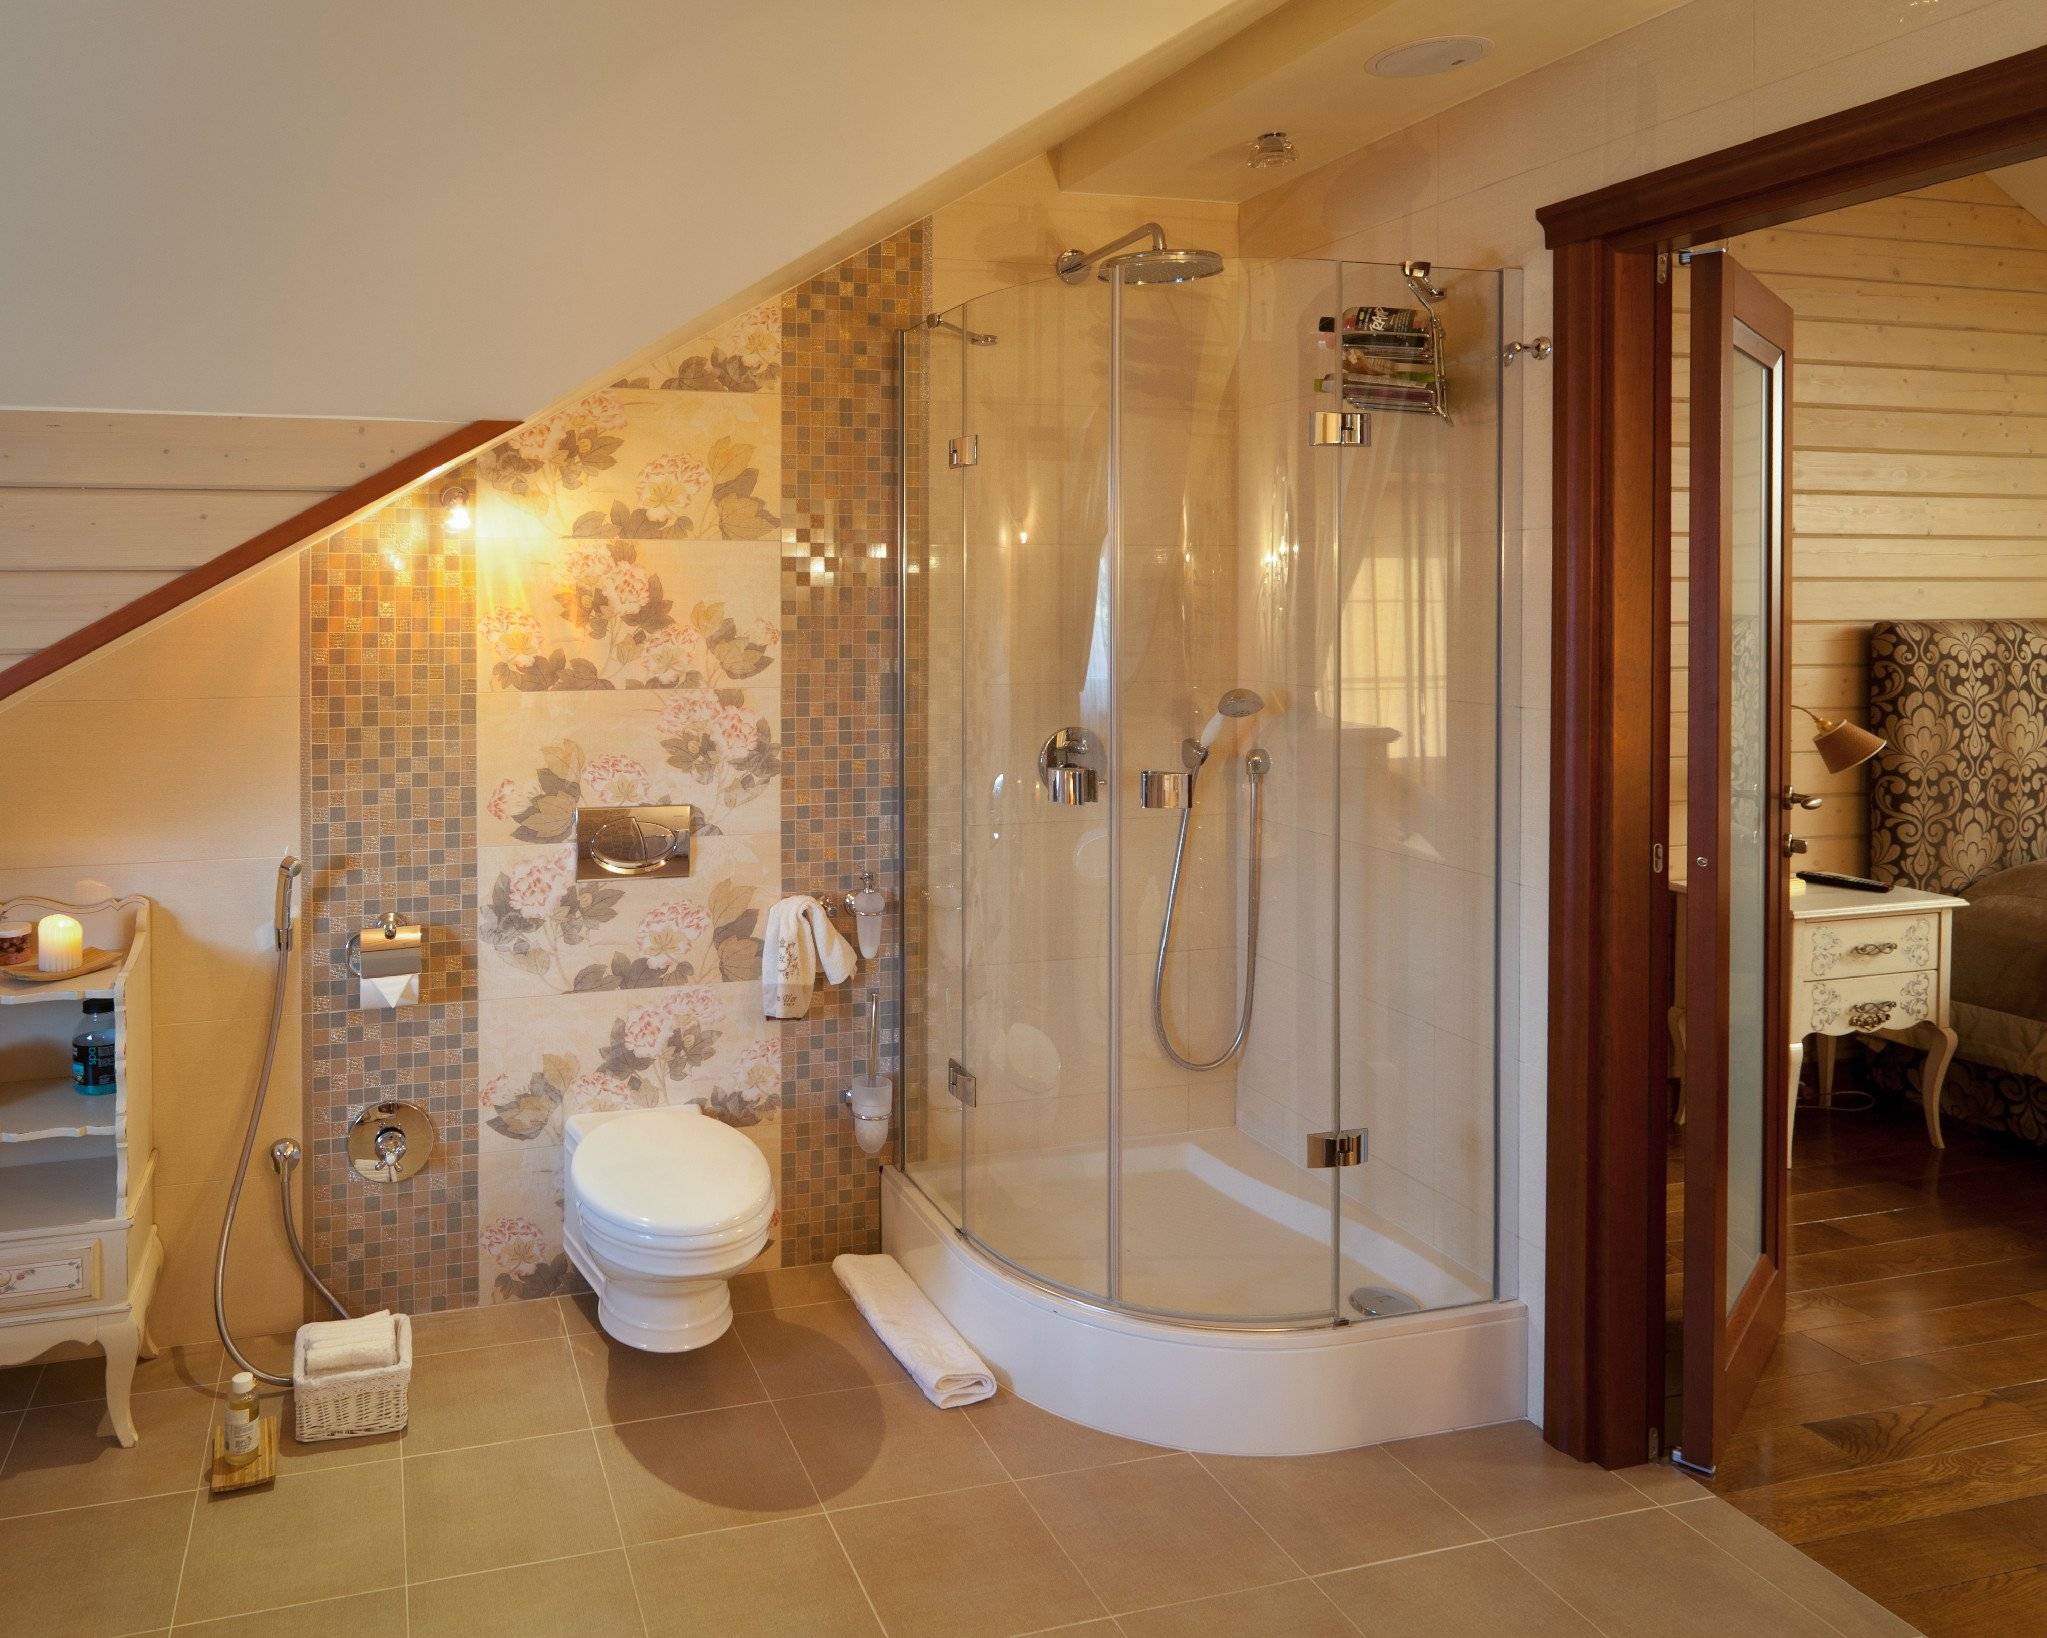 Удобный и практичный дизайн ванной комнаты в частном доме